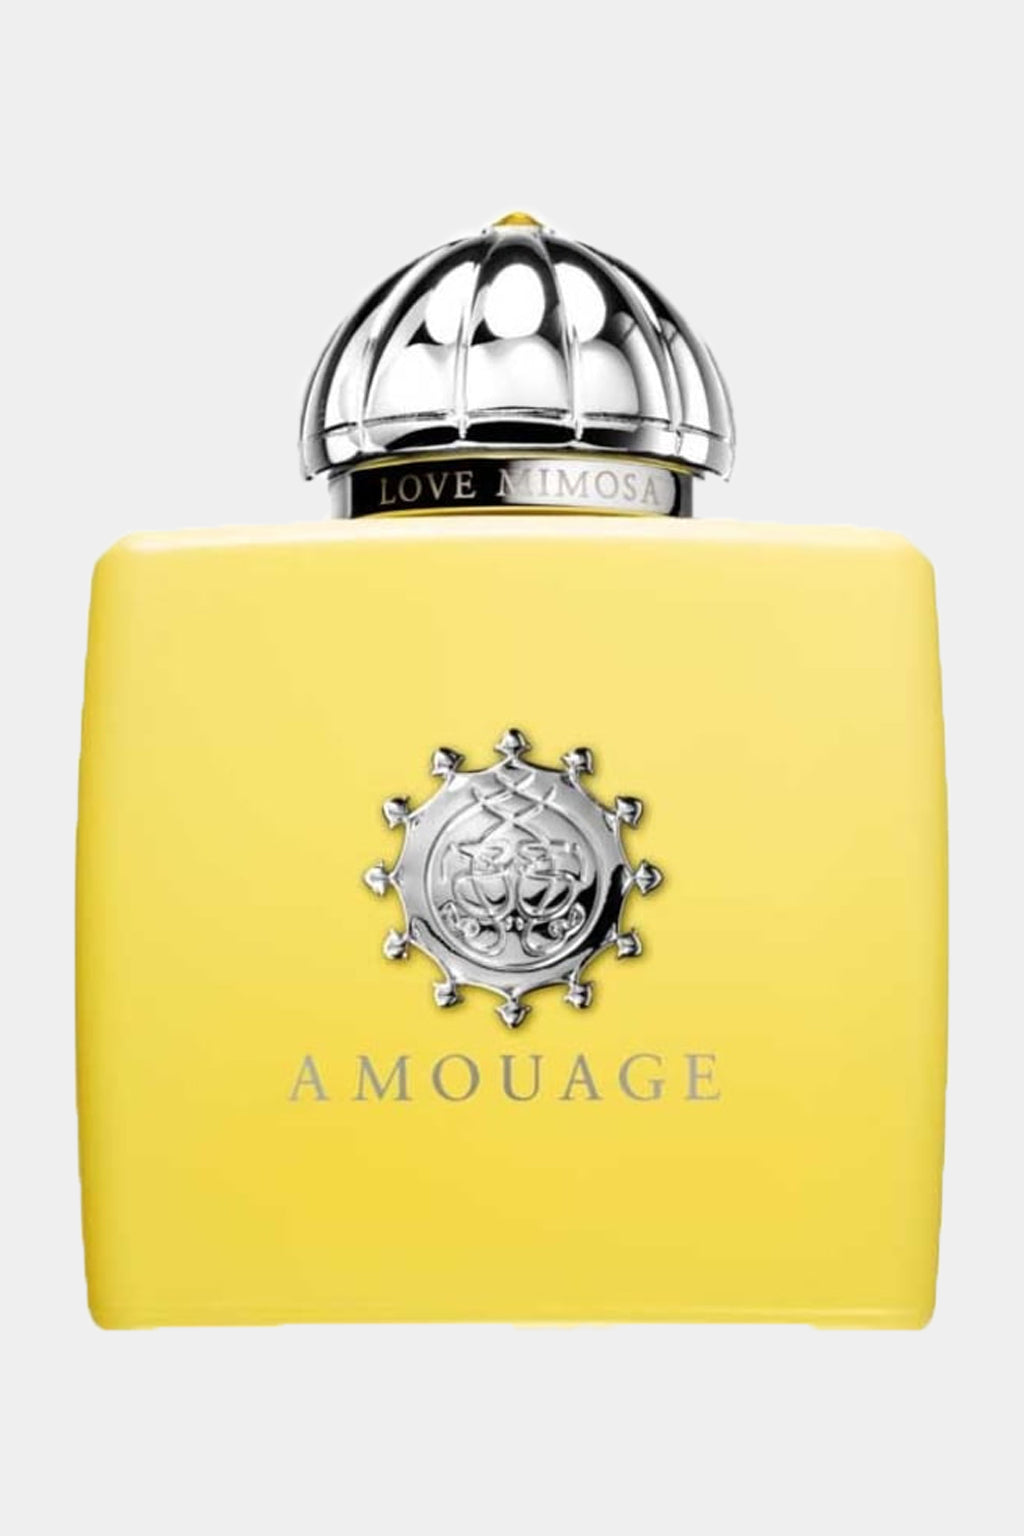 Amouage - Love Mimosa Eau de Parfum